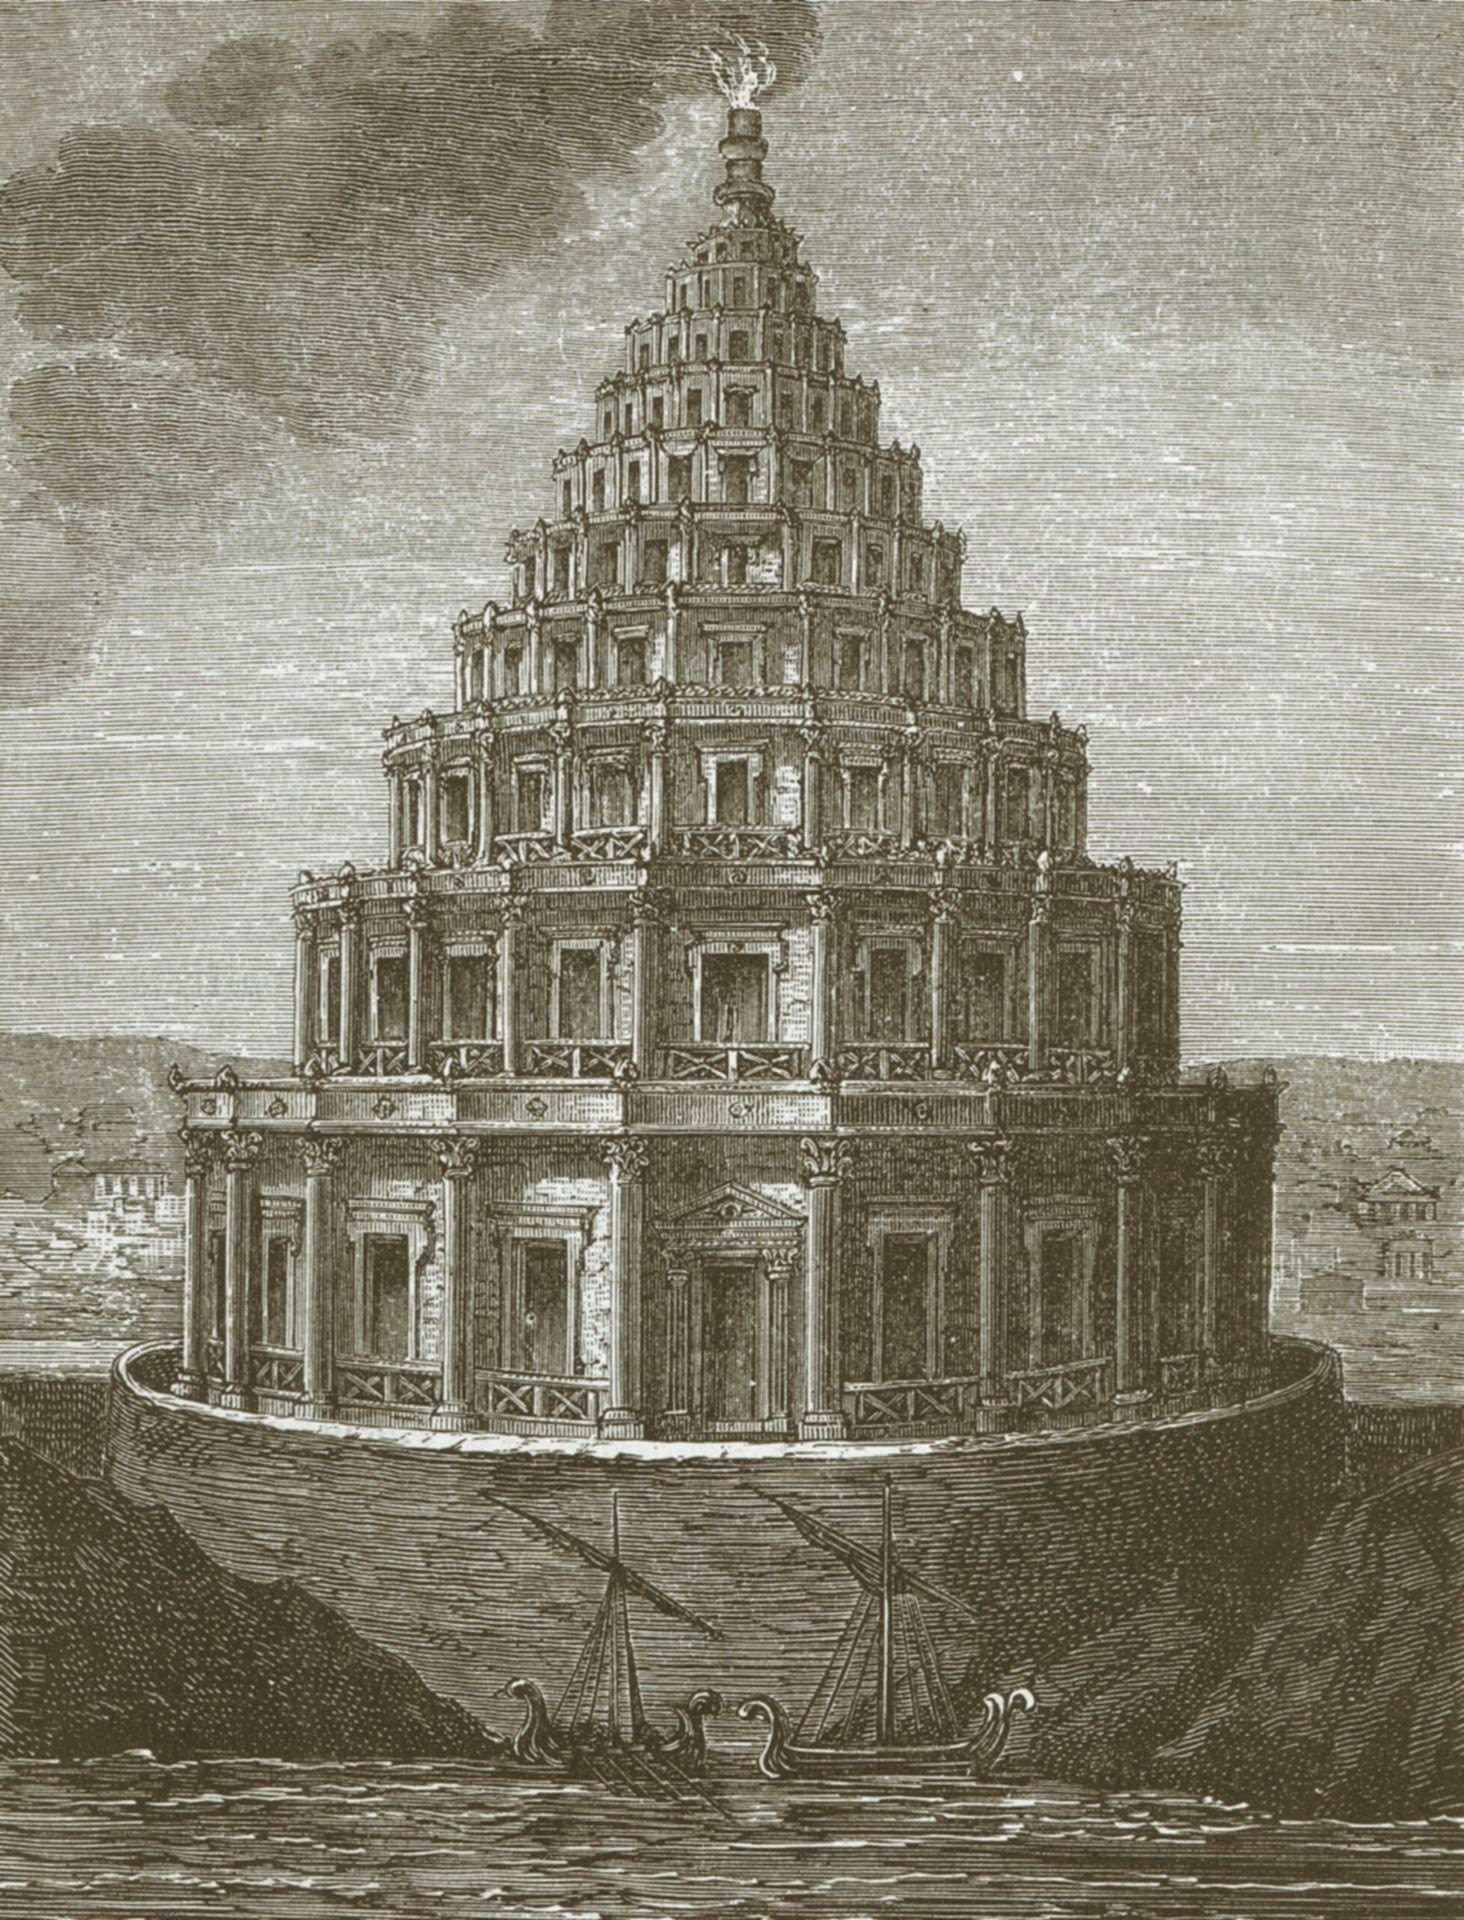 Pharos lighthouse of Alexandria